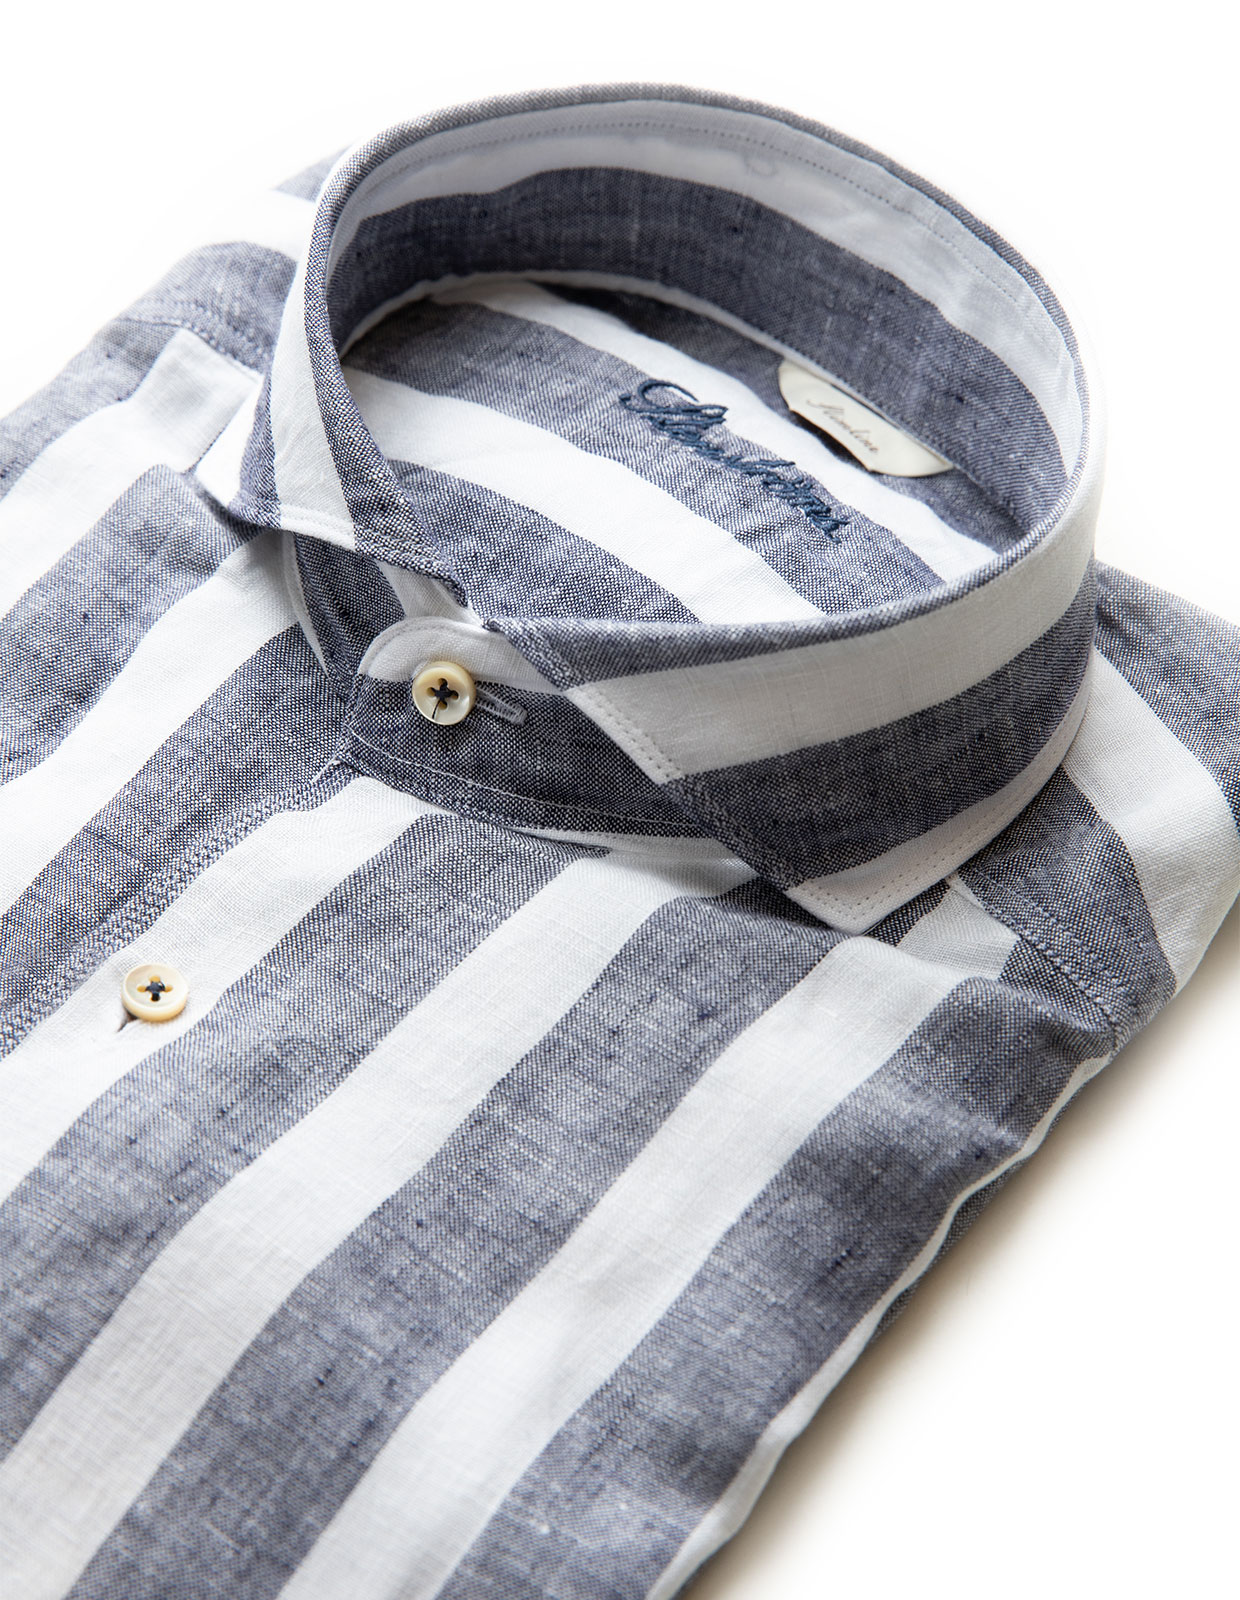 Slimline Block Stripe Linen Shirt Navy/White